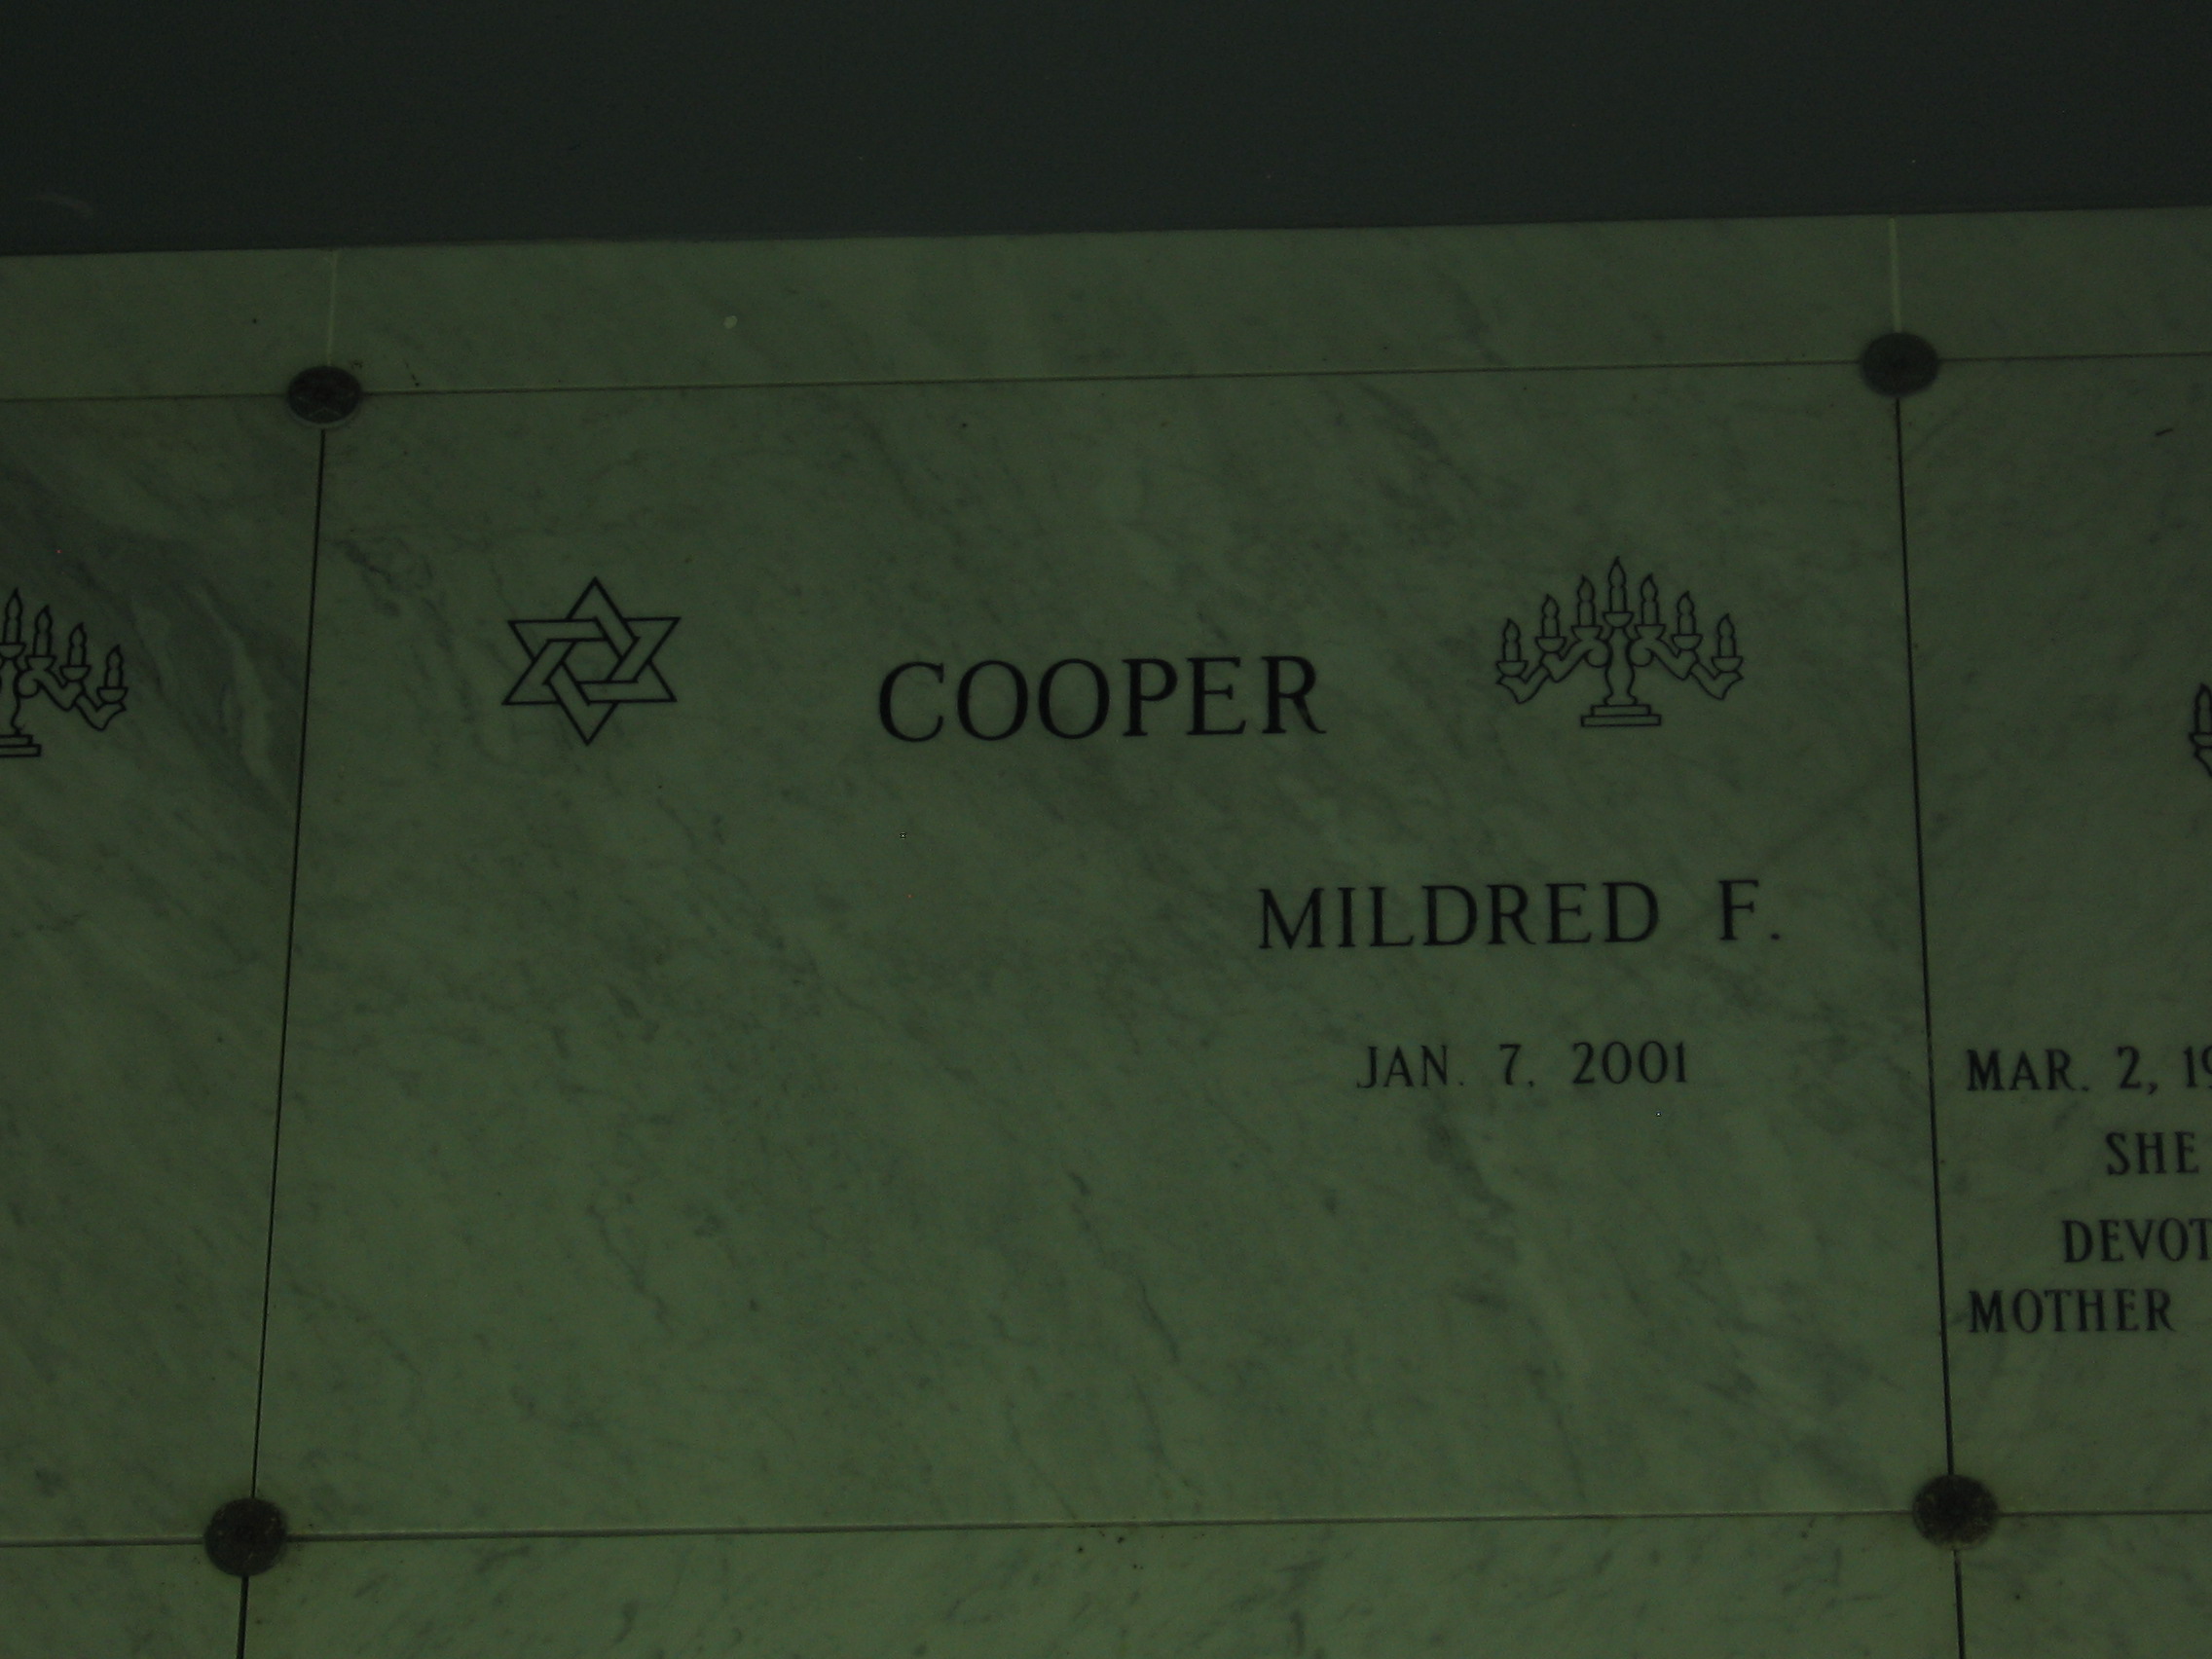 Mildred F Cooper